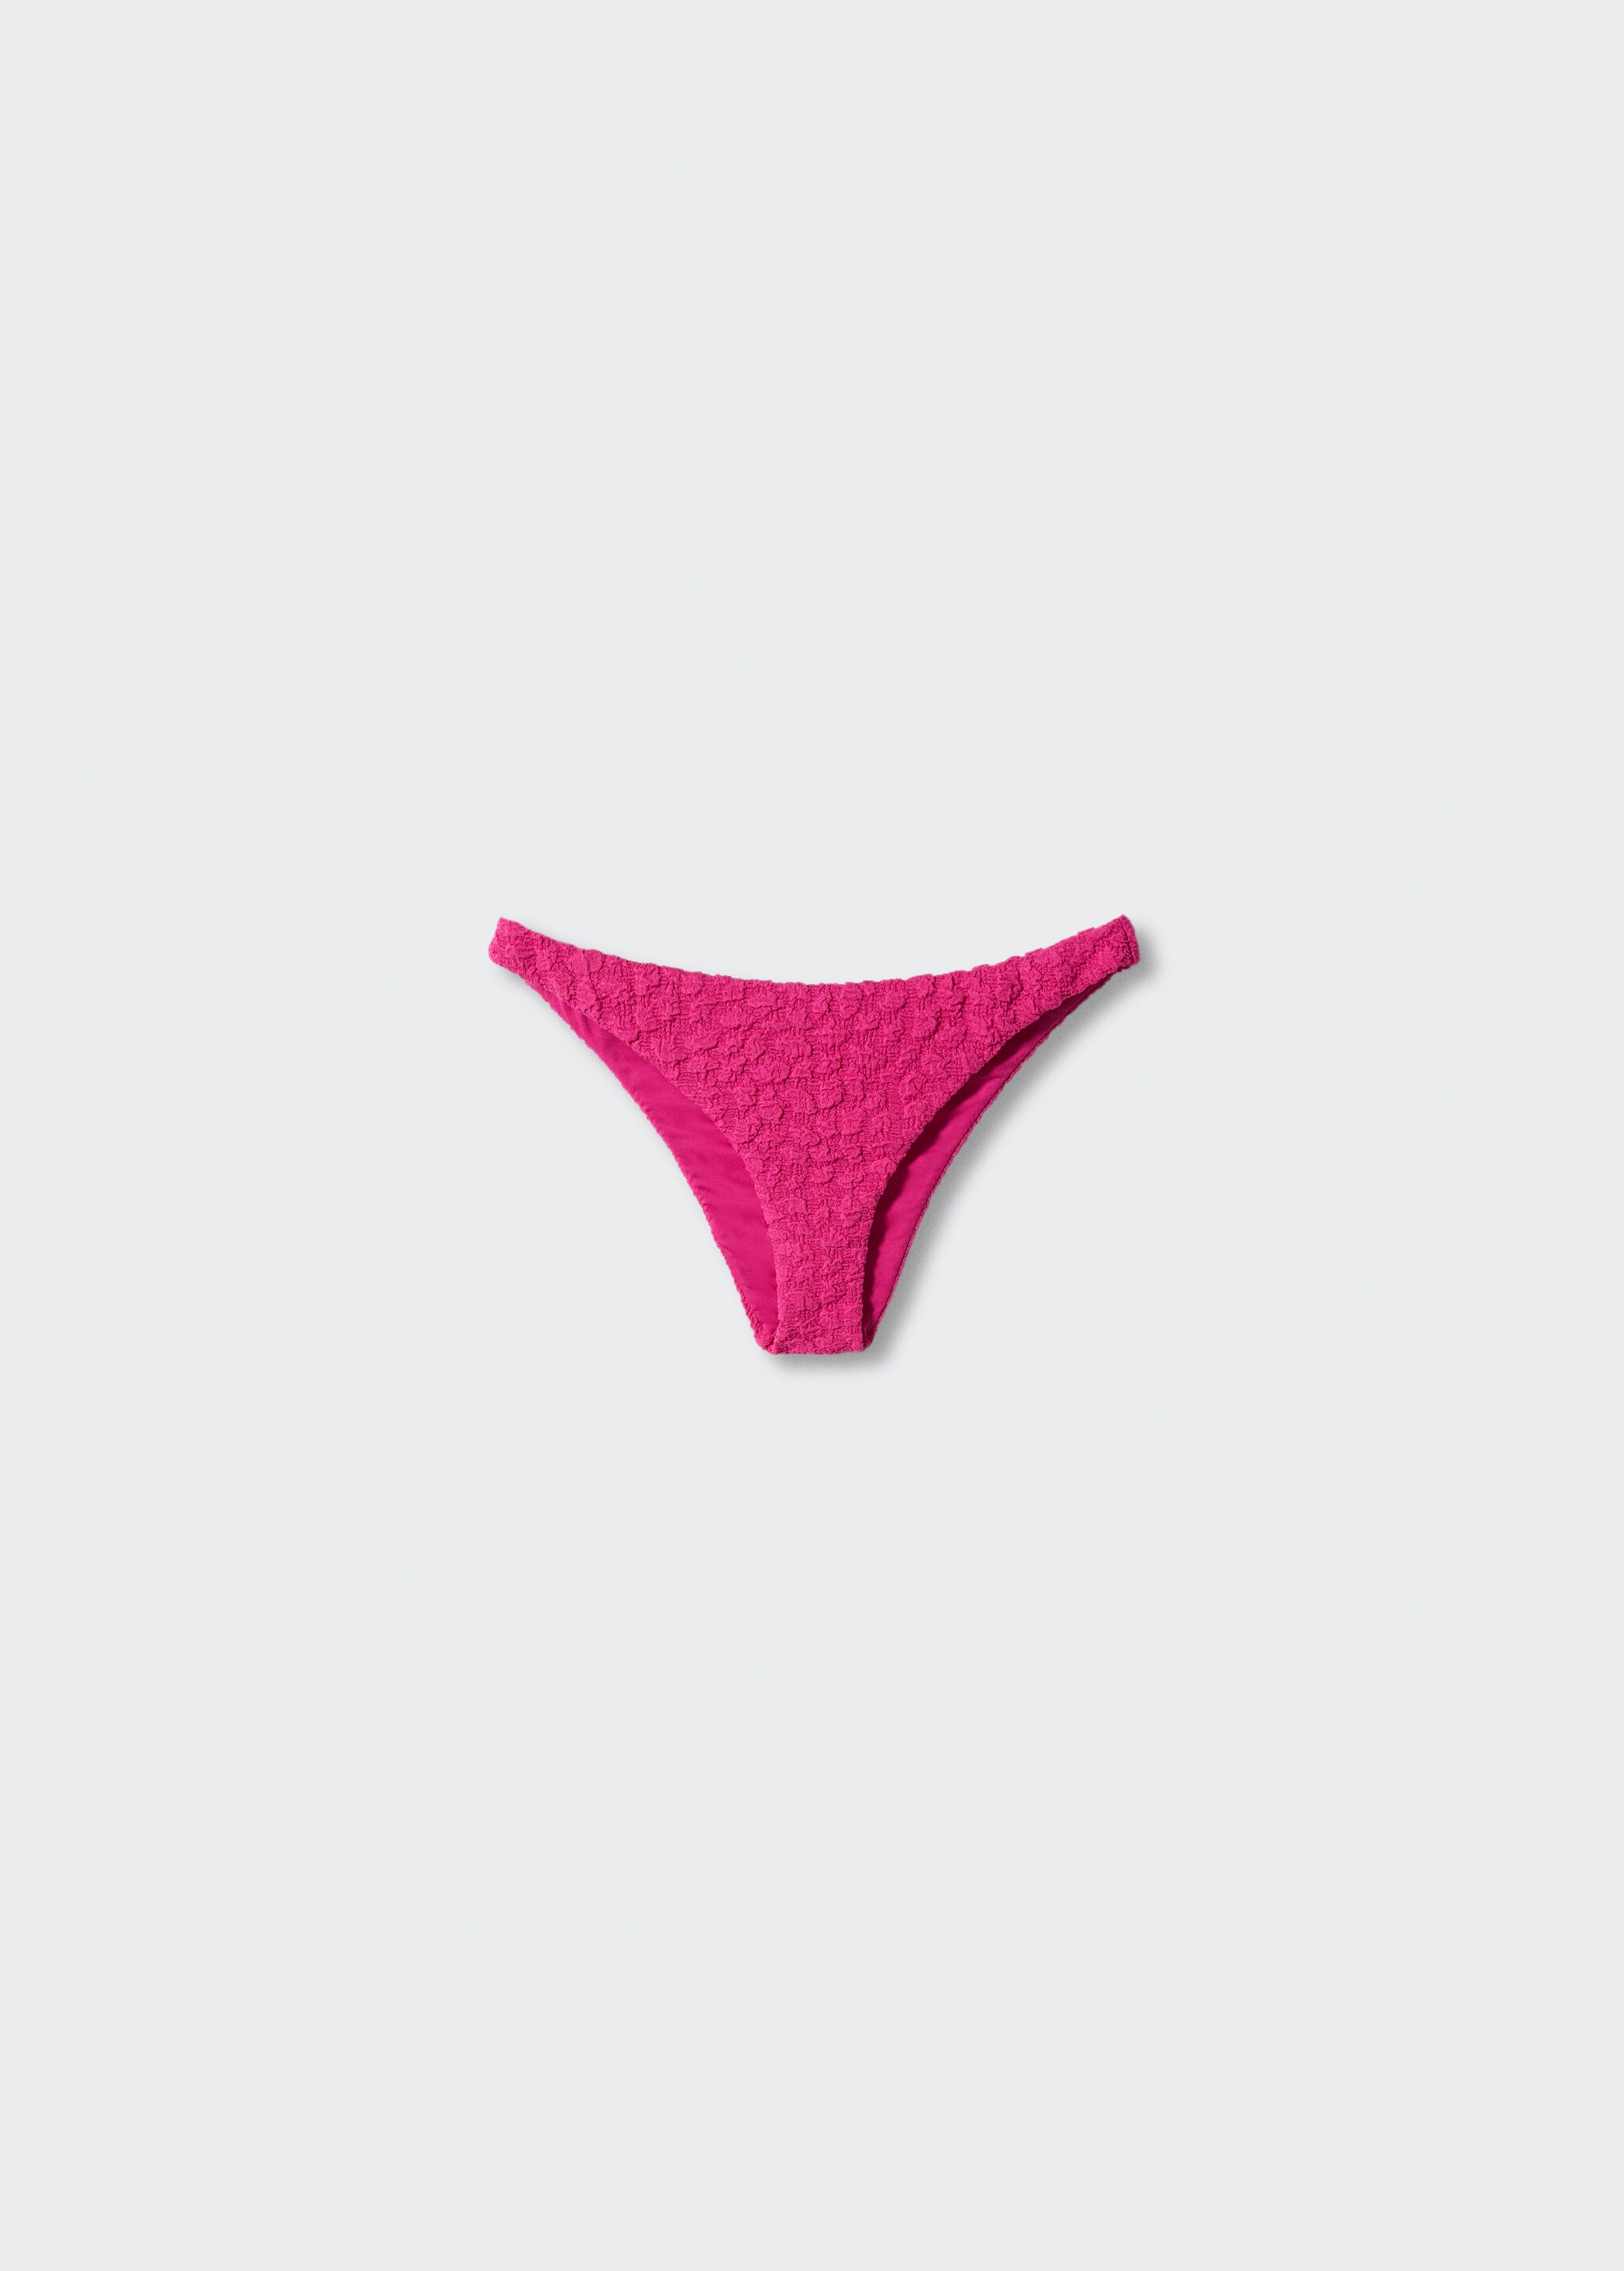 Culotte bikini classique texturée - Article sans modèle